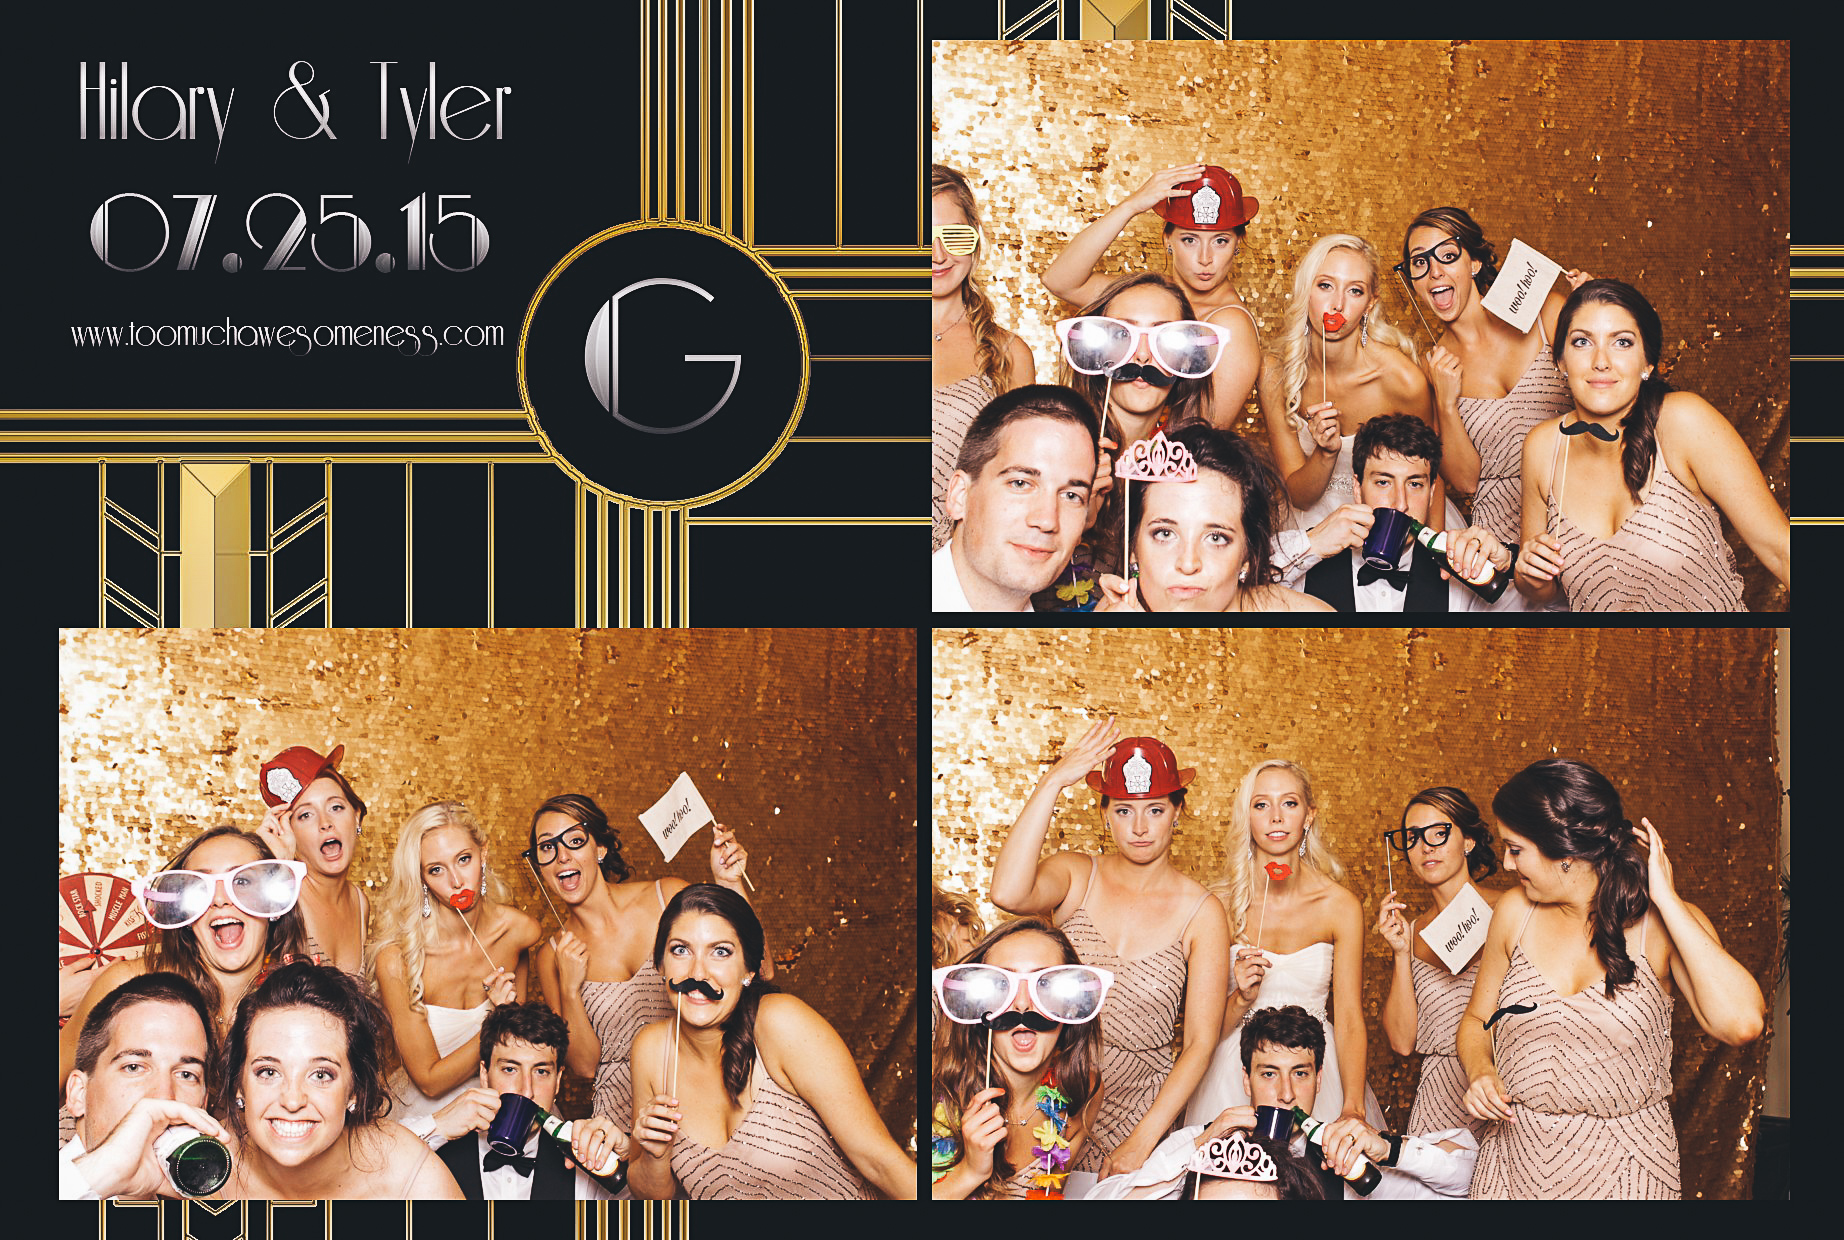 00016-Wydham Hotel Wedding Photobooth-20150725.jpg